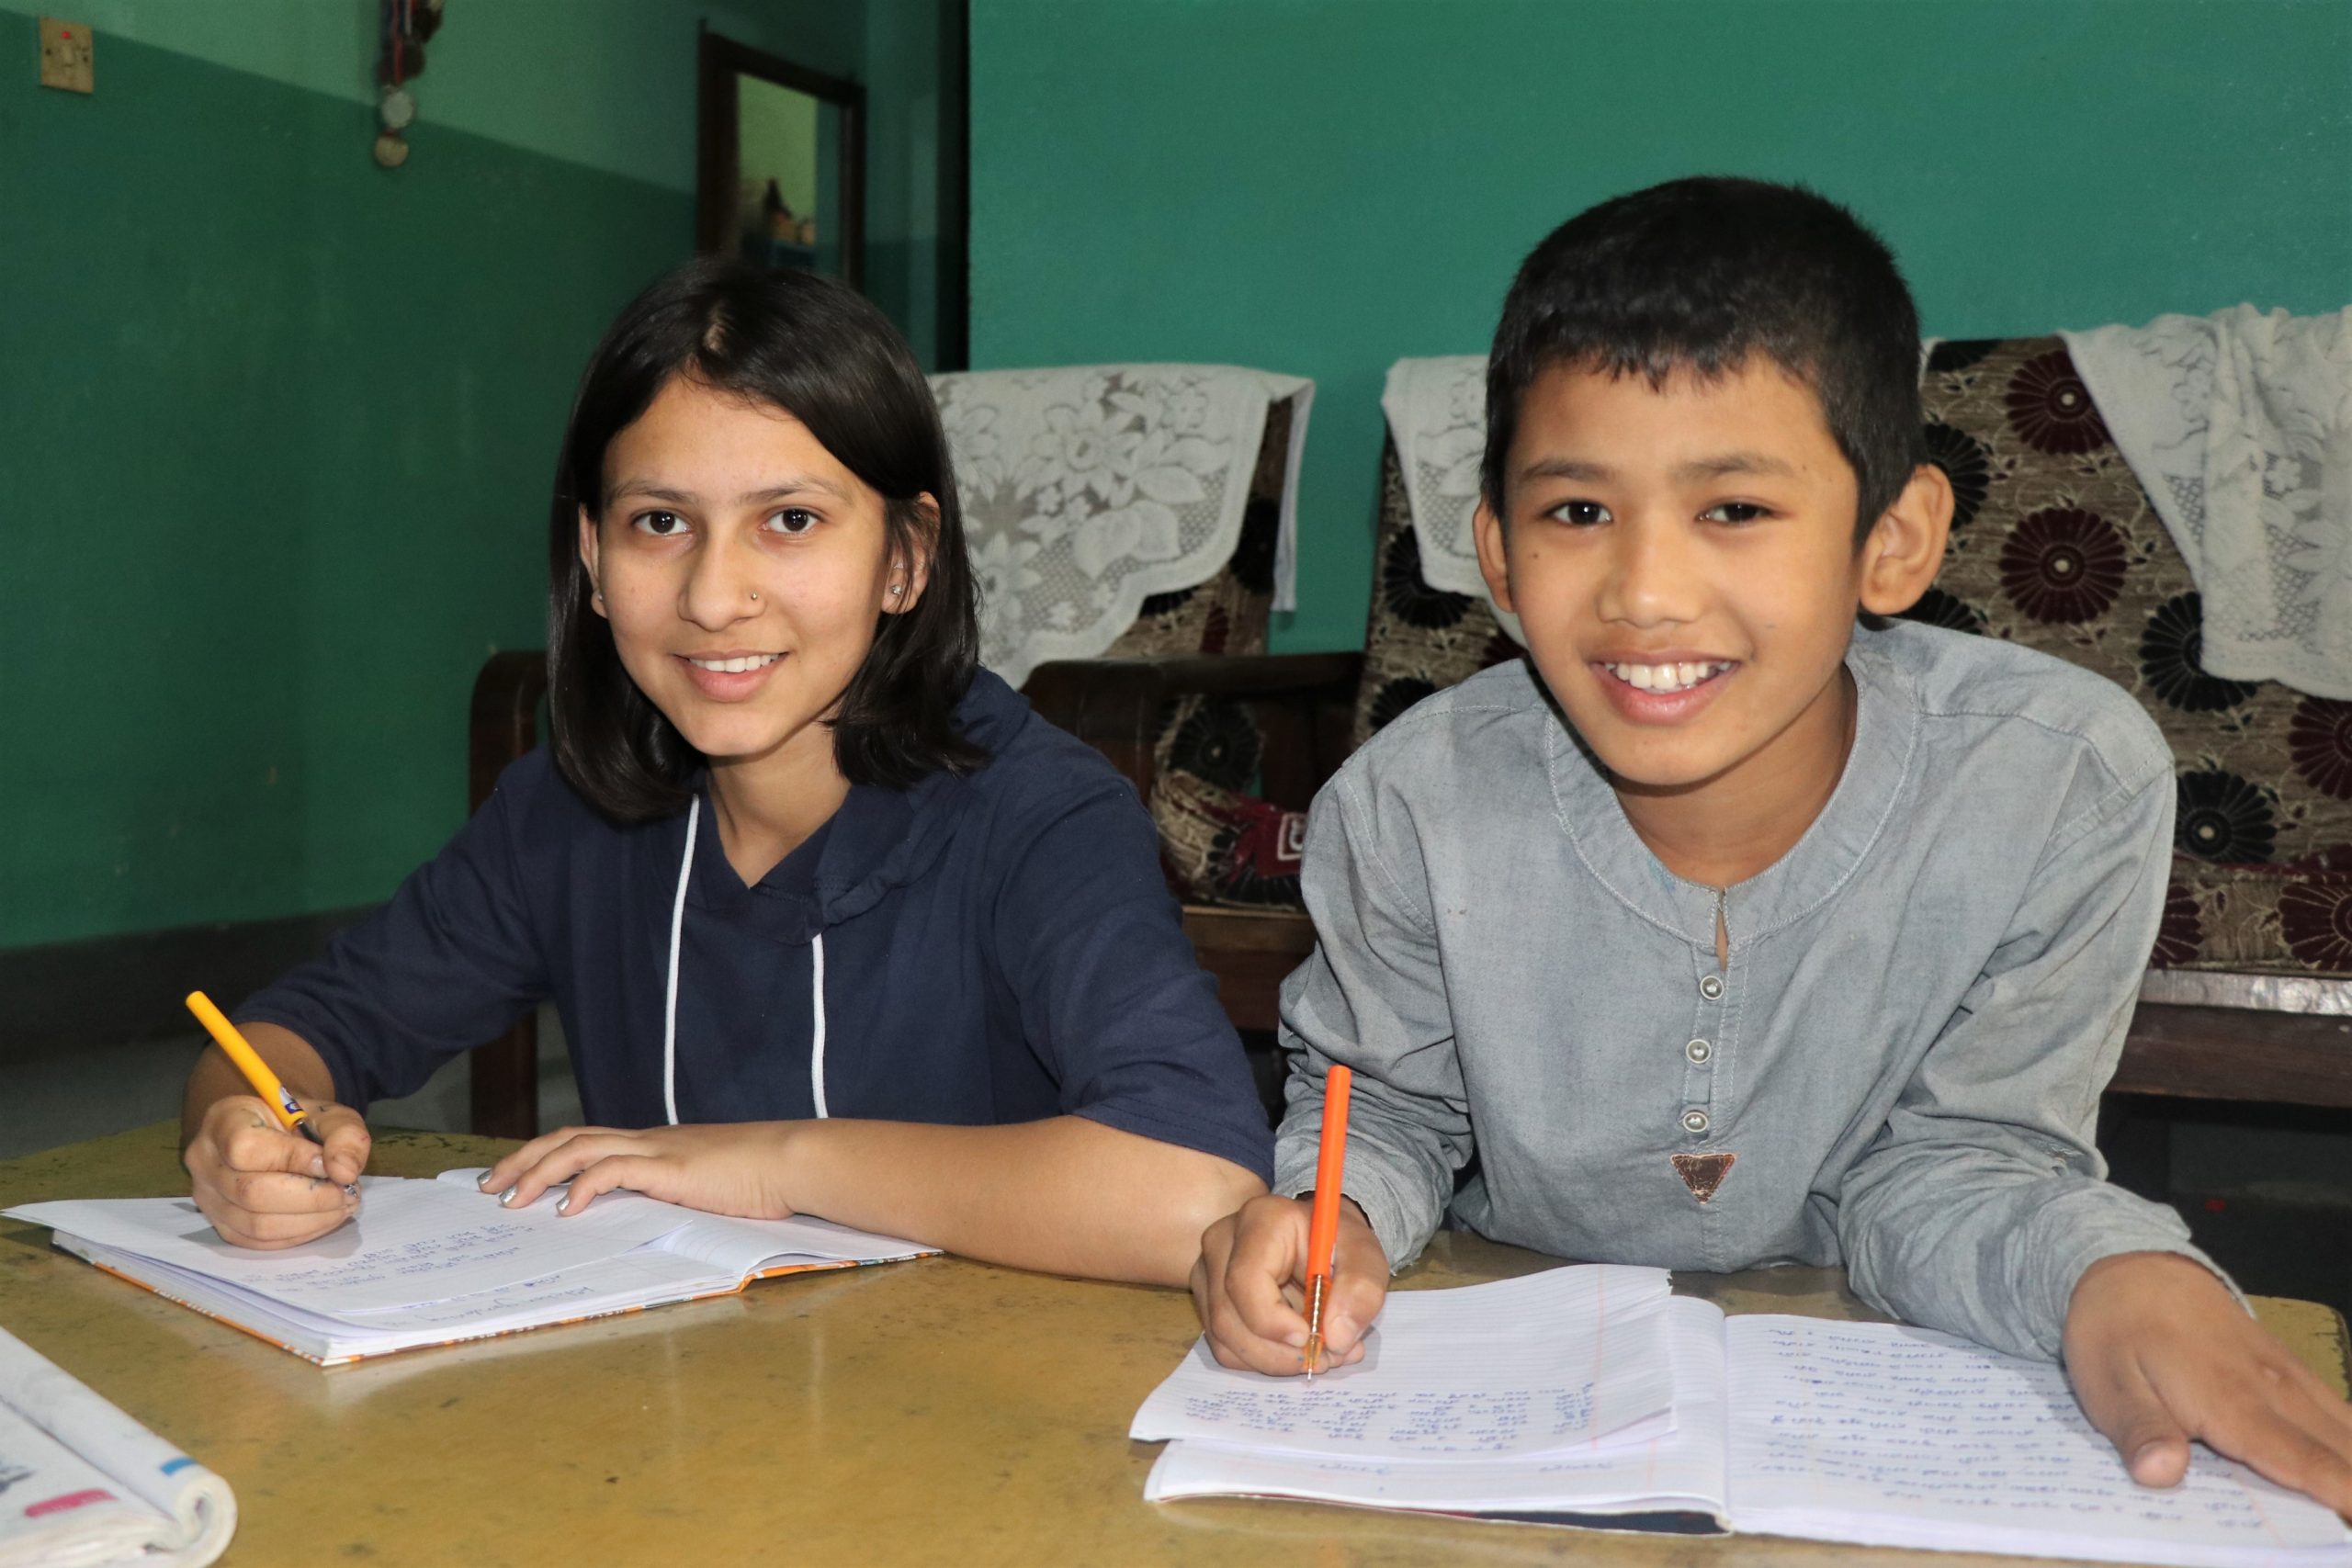 « Pour moi, c’est la ca-pacité à faire totalement confiance aux autres et à tout partager avec eux. » La jeune Népalaise Rasmika (12 ans, à gauche sur la photo) explique ce que la confiance signifie pour elle.